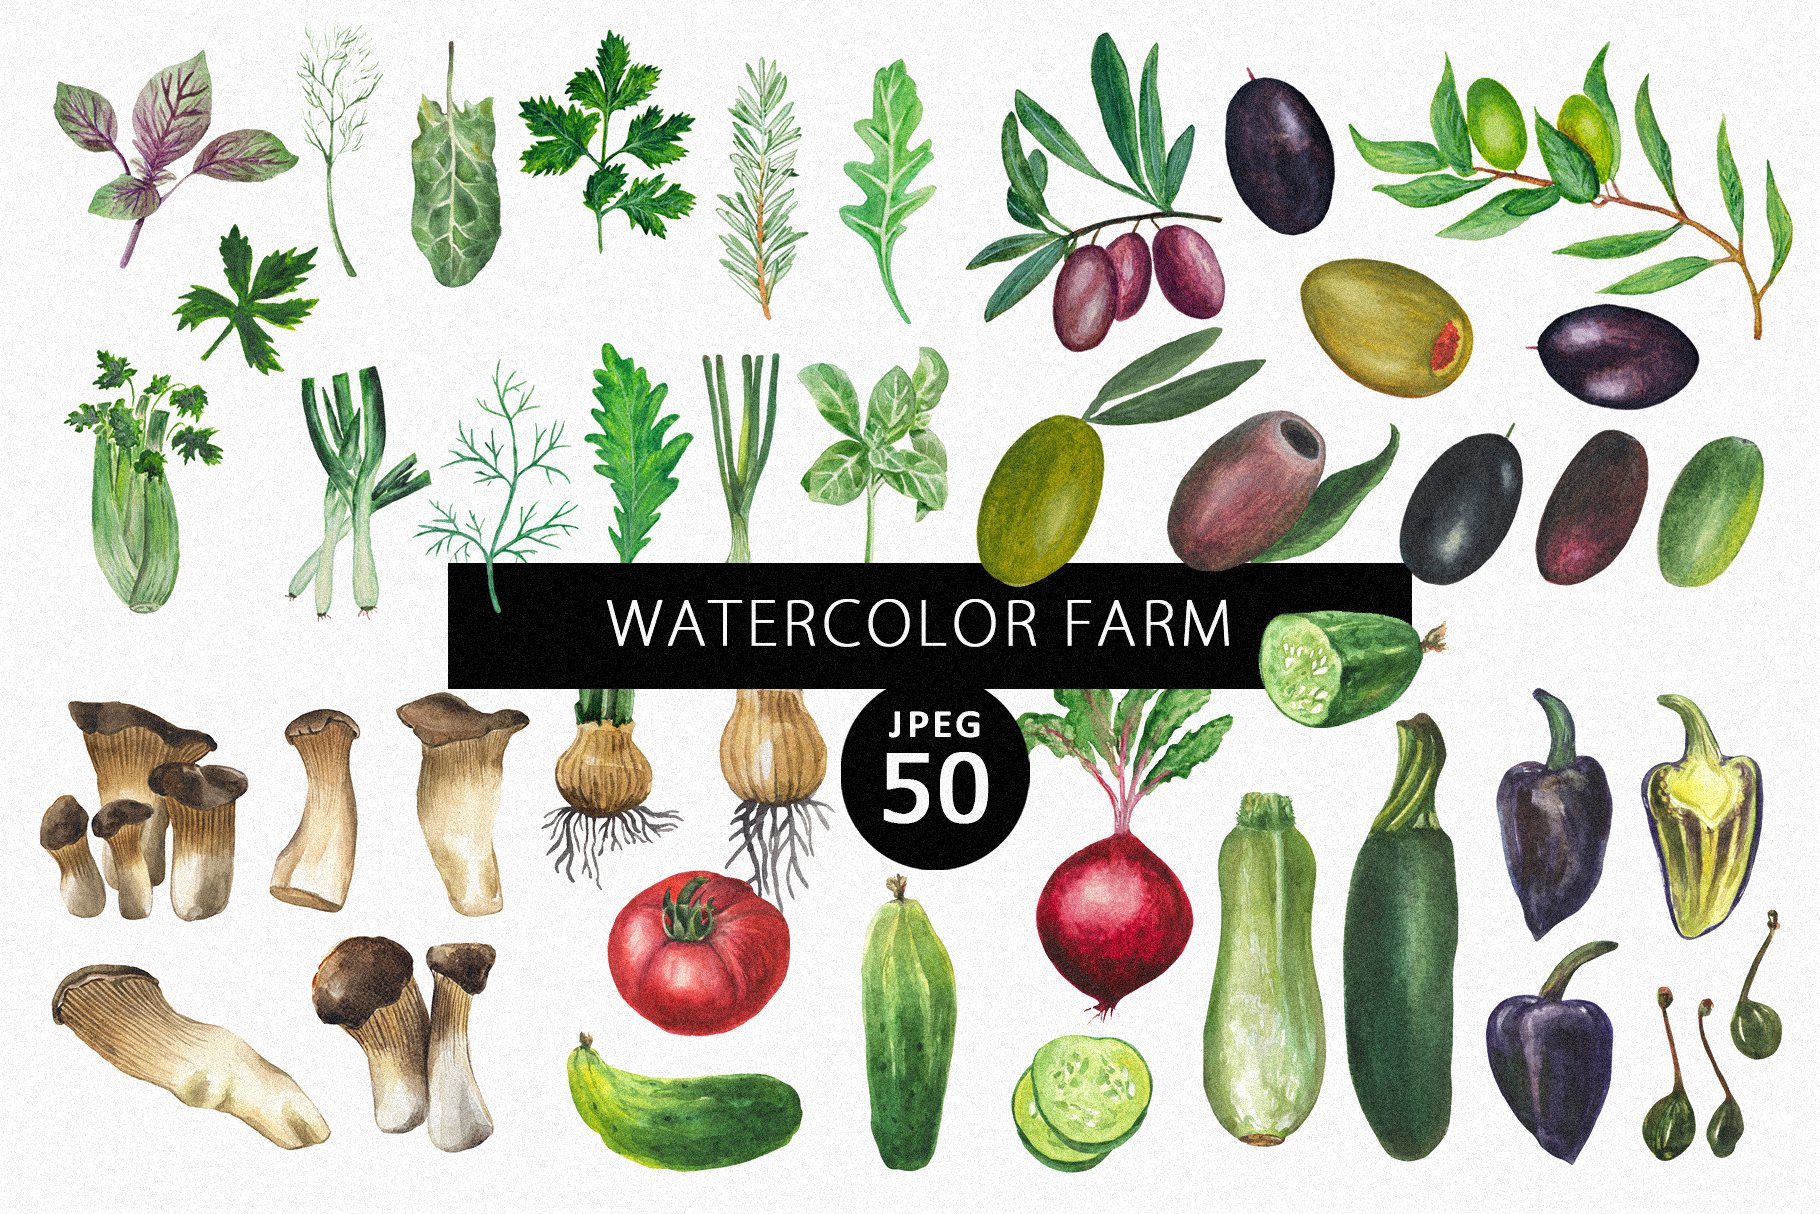 Watercolor Farm cover image.